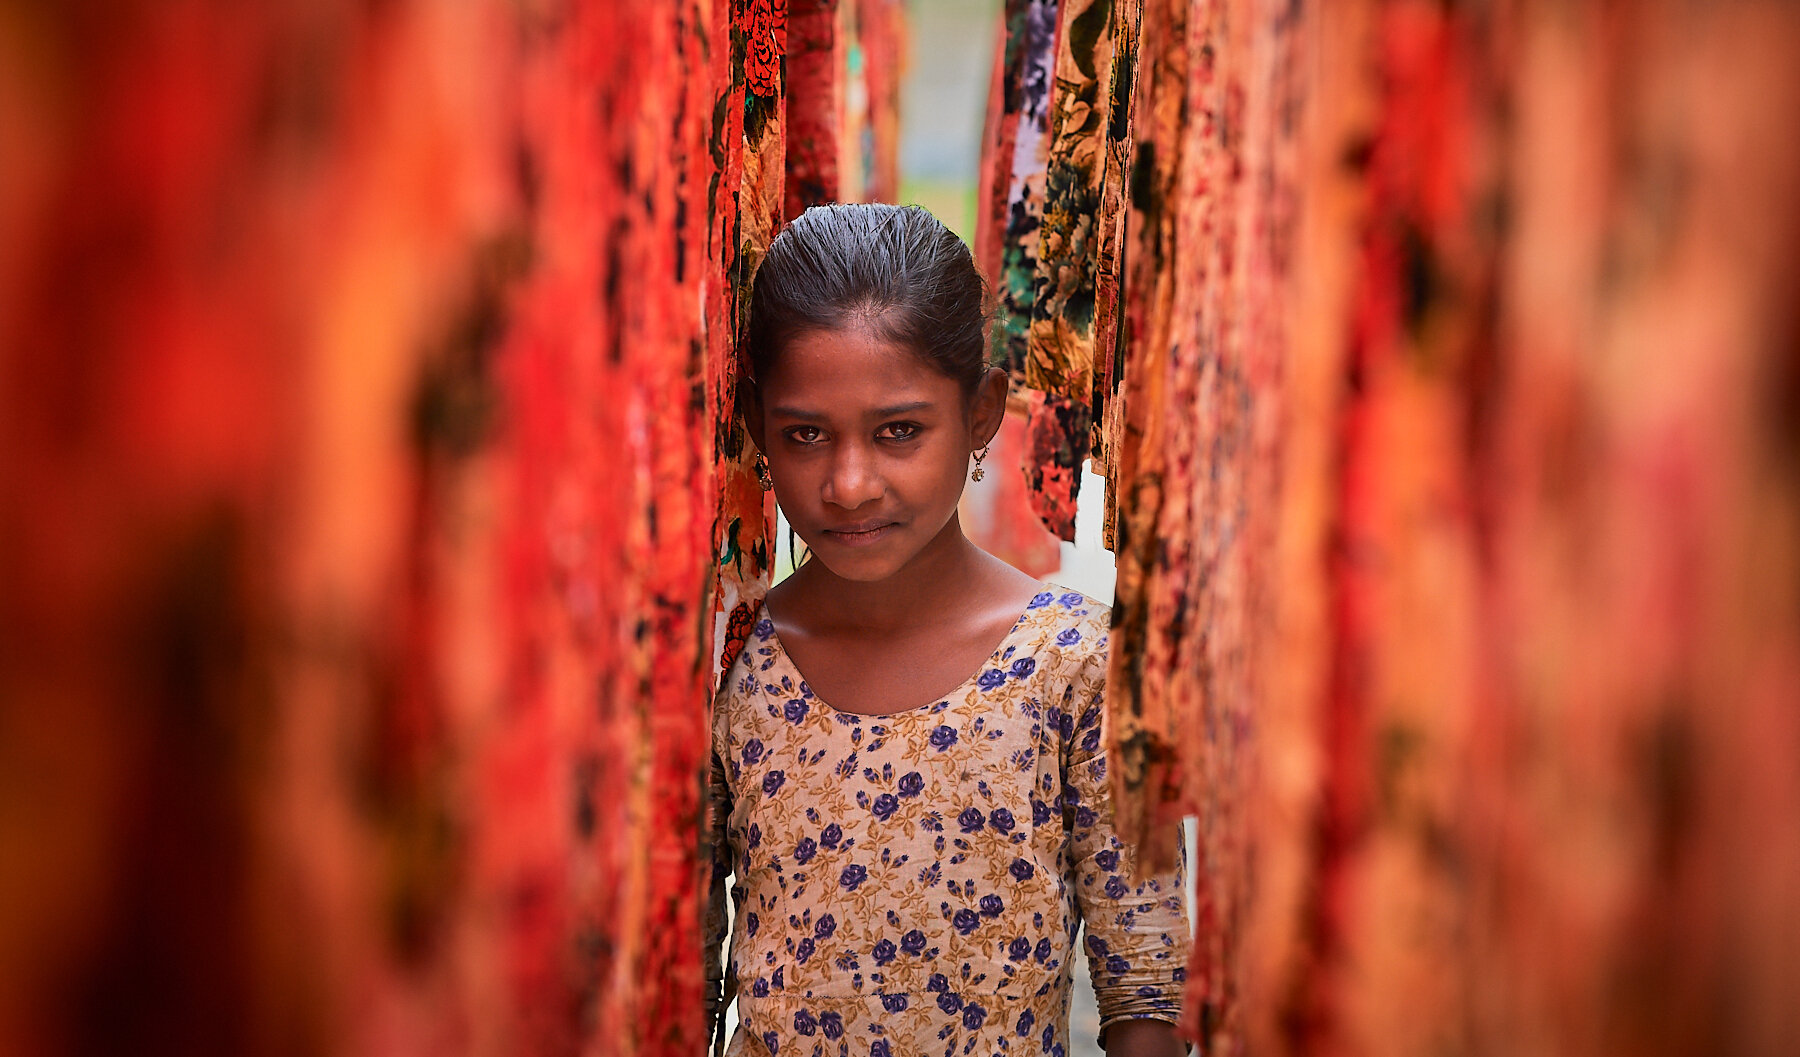 Young girl, Bangladesh